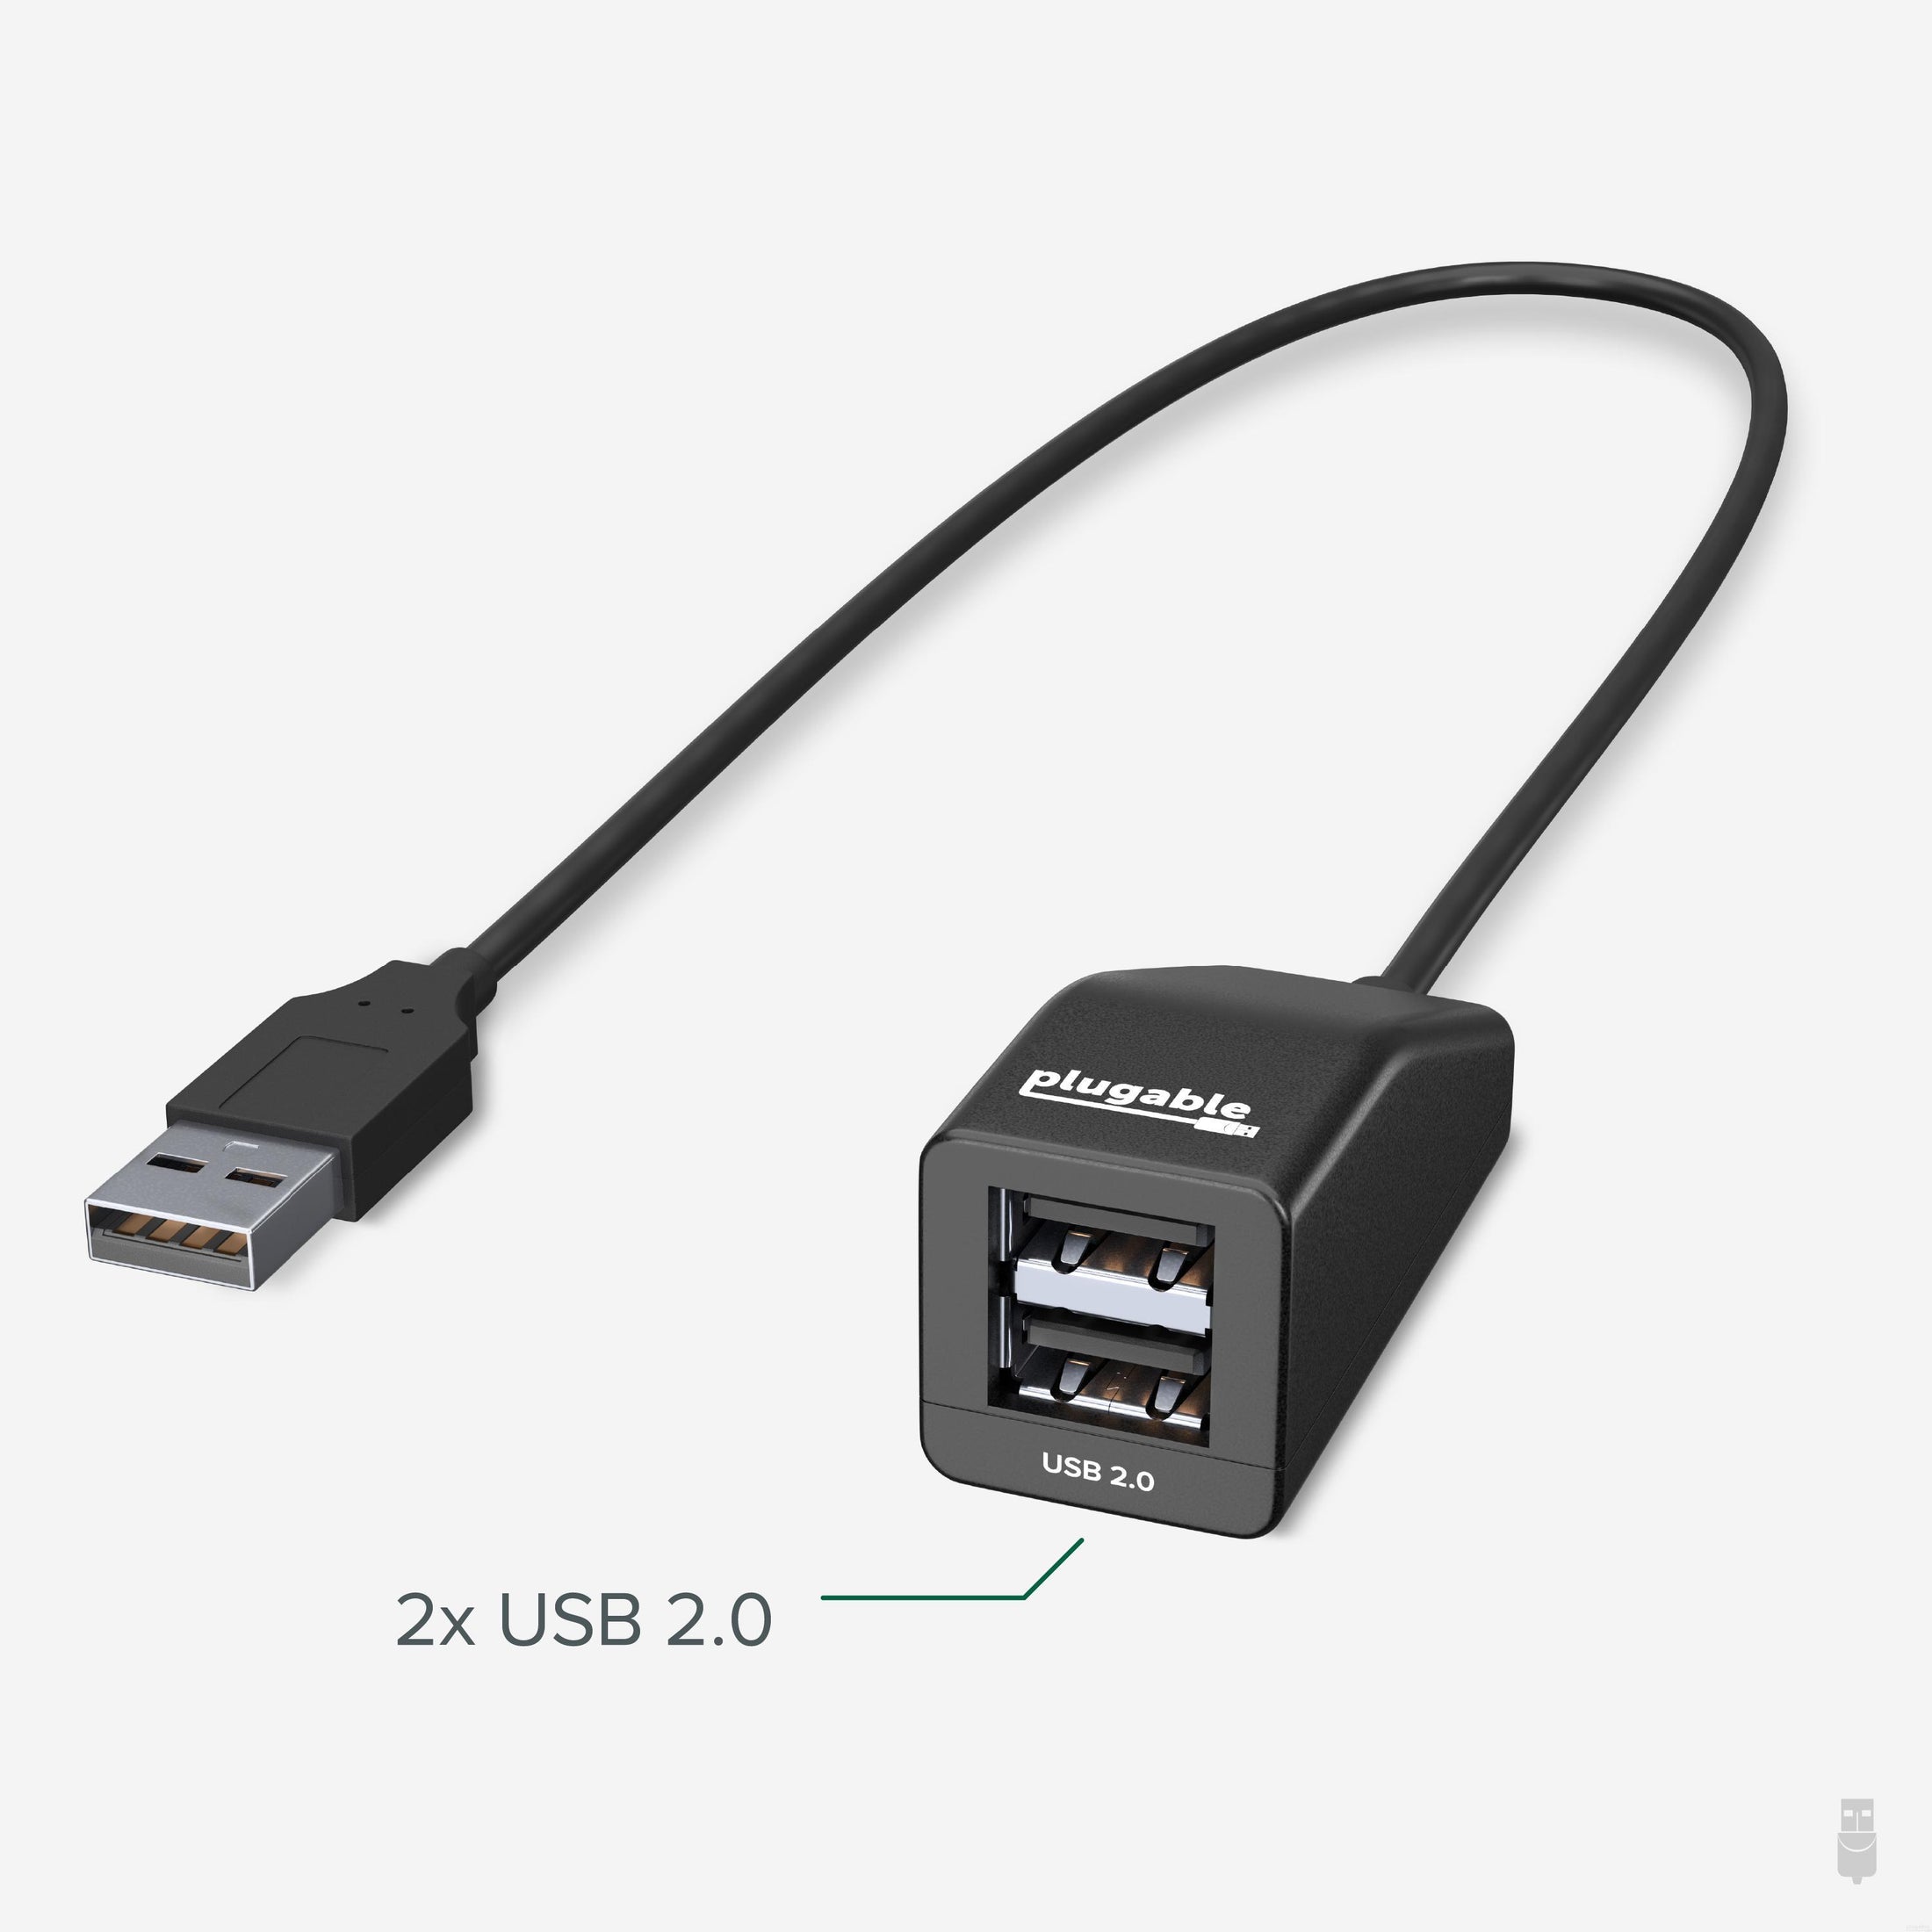 Nauwgezet helpen micro Plugable USB 2.0 2-Port Hub/Splitter – Plugable Technologies